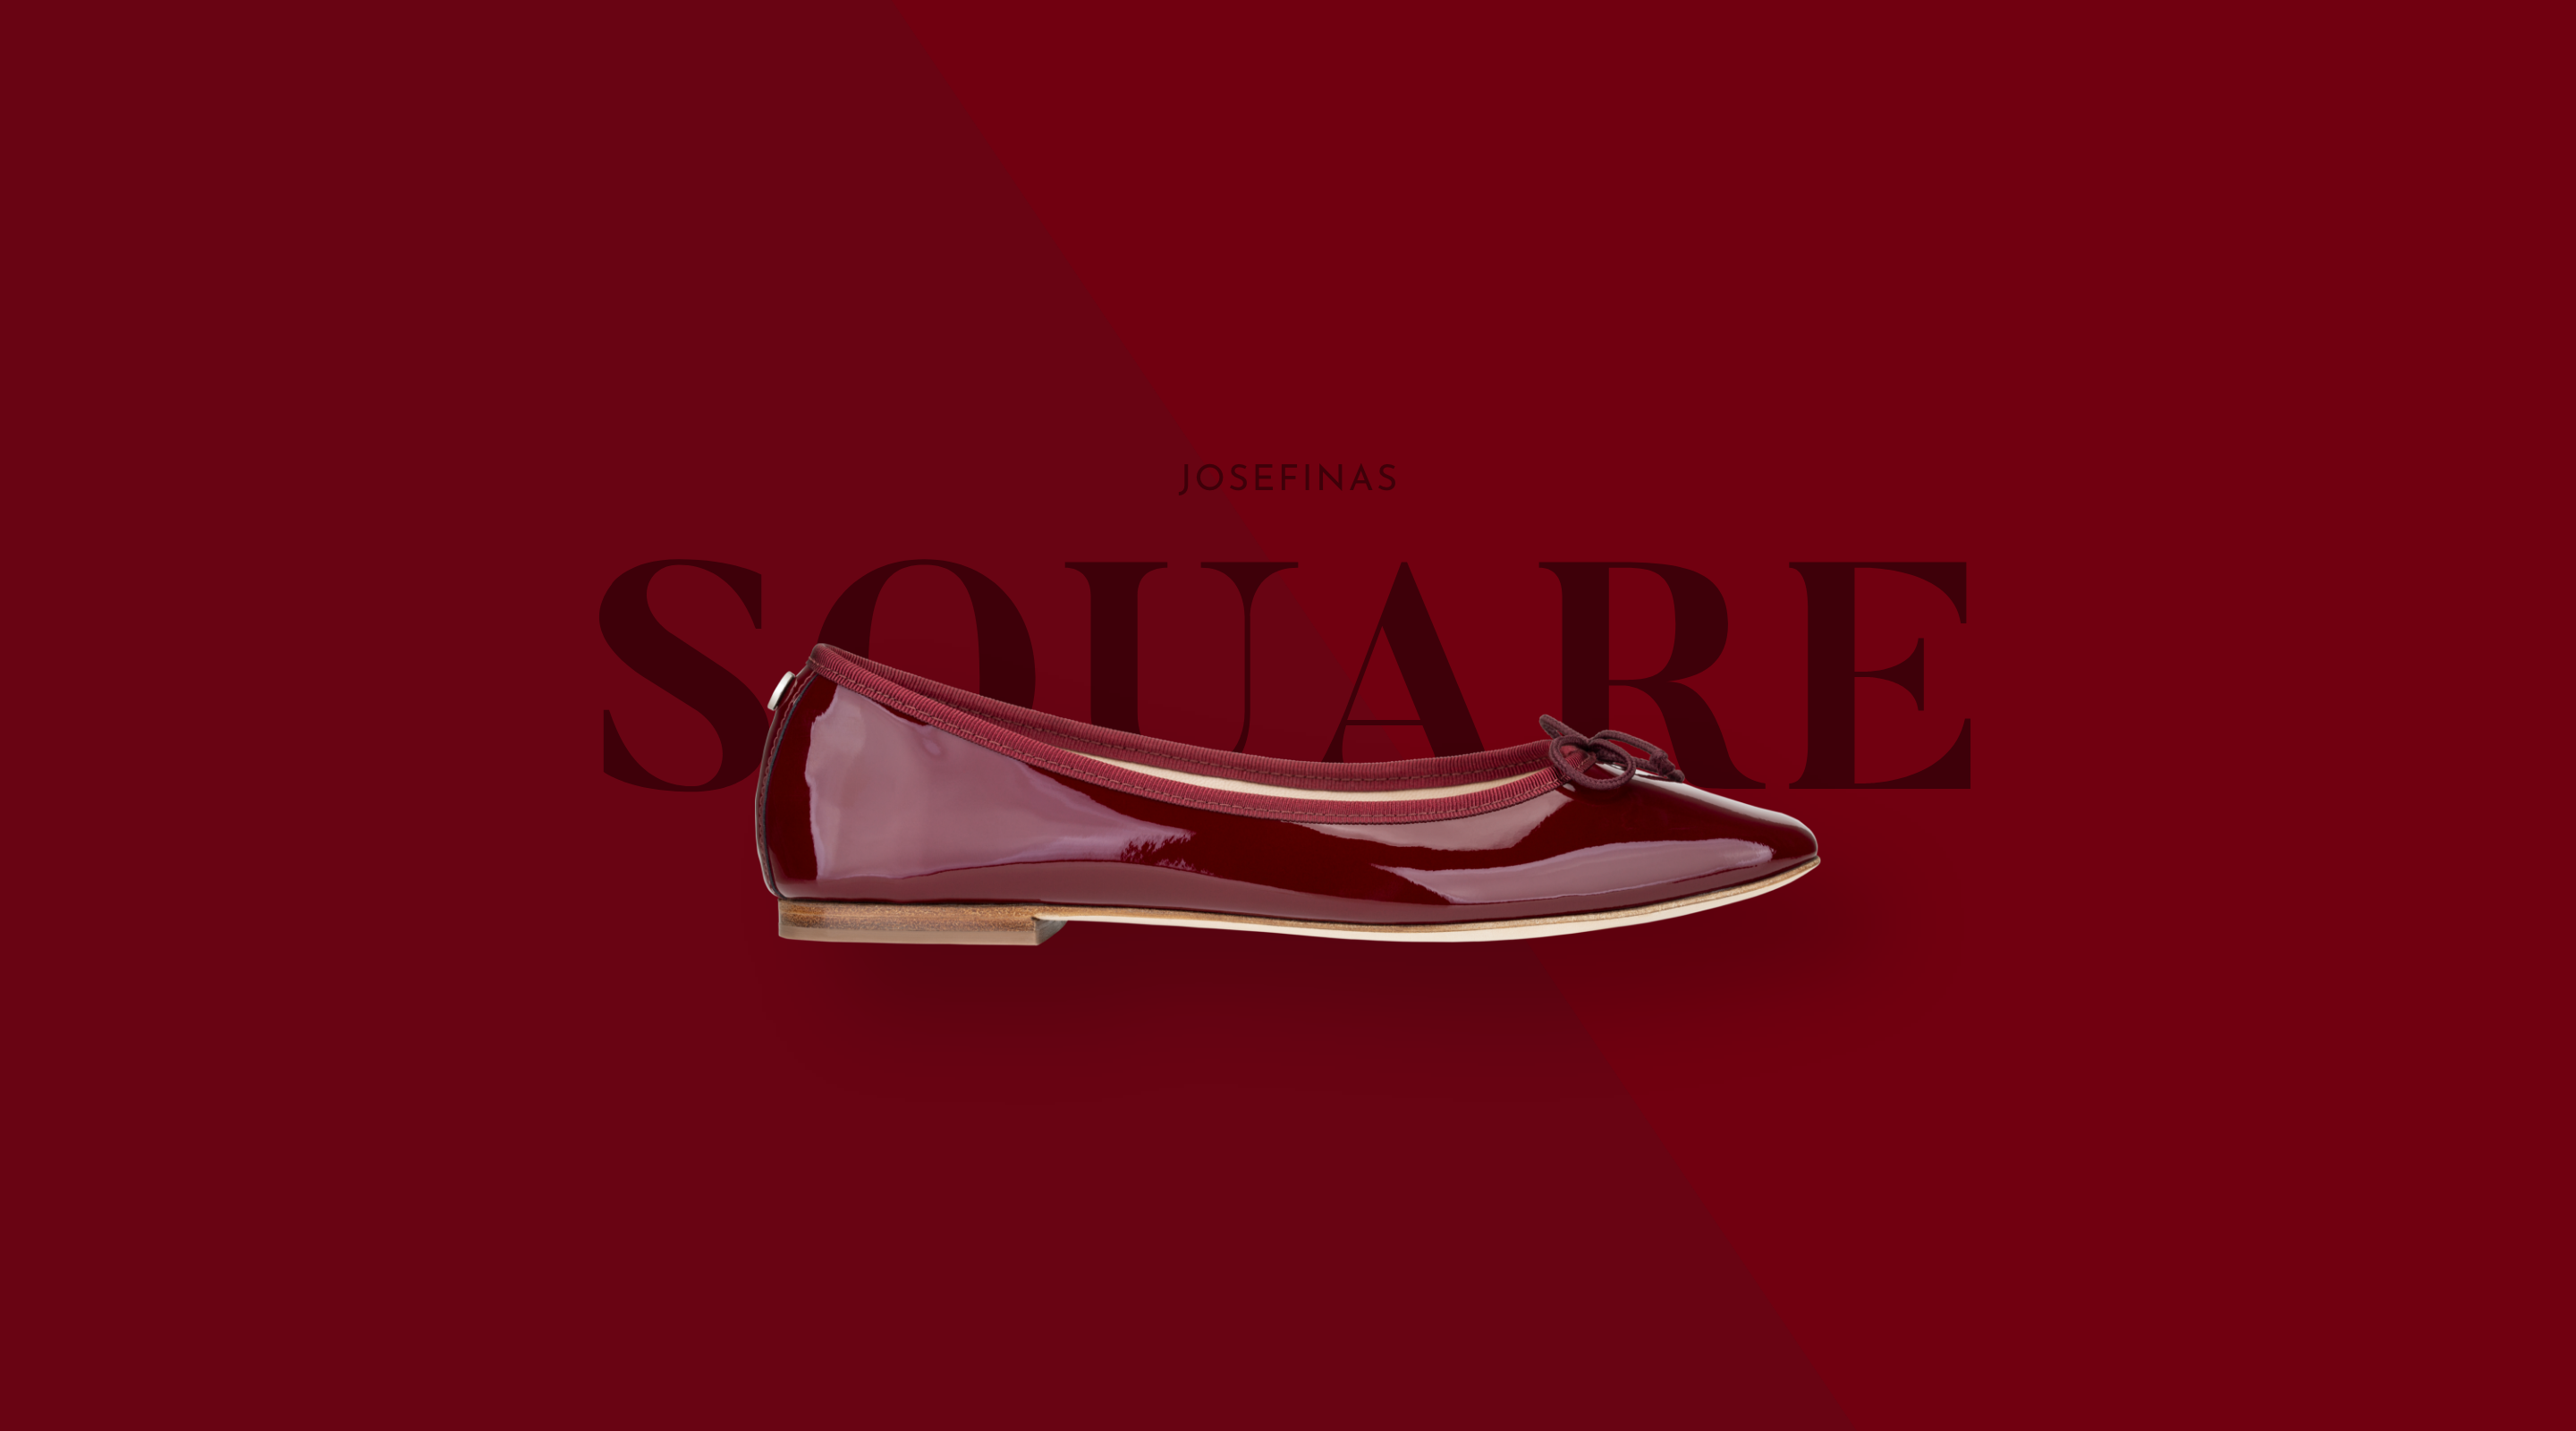 New_Josefinas_Square_Red_Wine